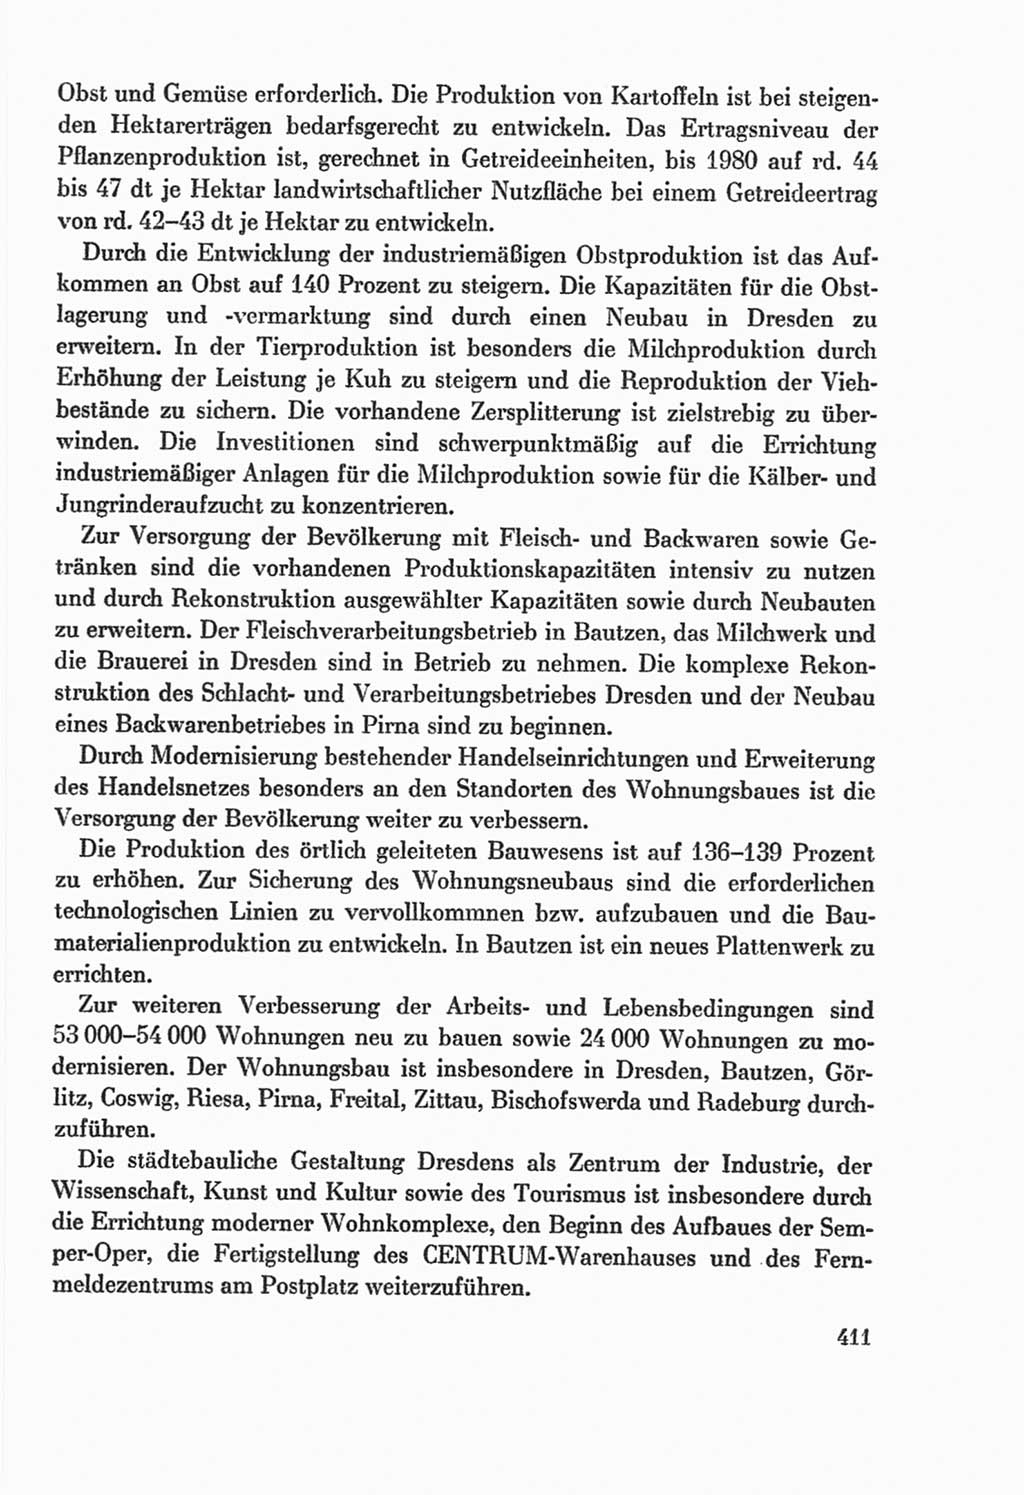 Protokoll der Verhandlungen des Ⅸ. Parteitages der Sozialistischen Einheitspartei Deutschlands (SED) [Deutsche Demokratische Republik (DDR)] 1976, Band 2, Seite 411 (Prot. Verh. Ⅸ. PT SED DDR 1976, Bd. 2, S. 411)